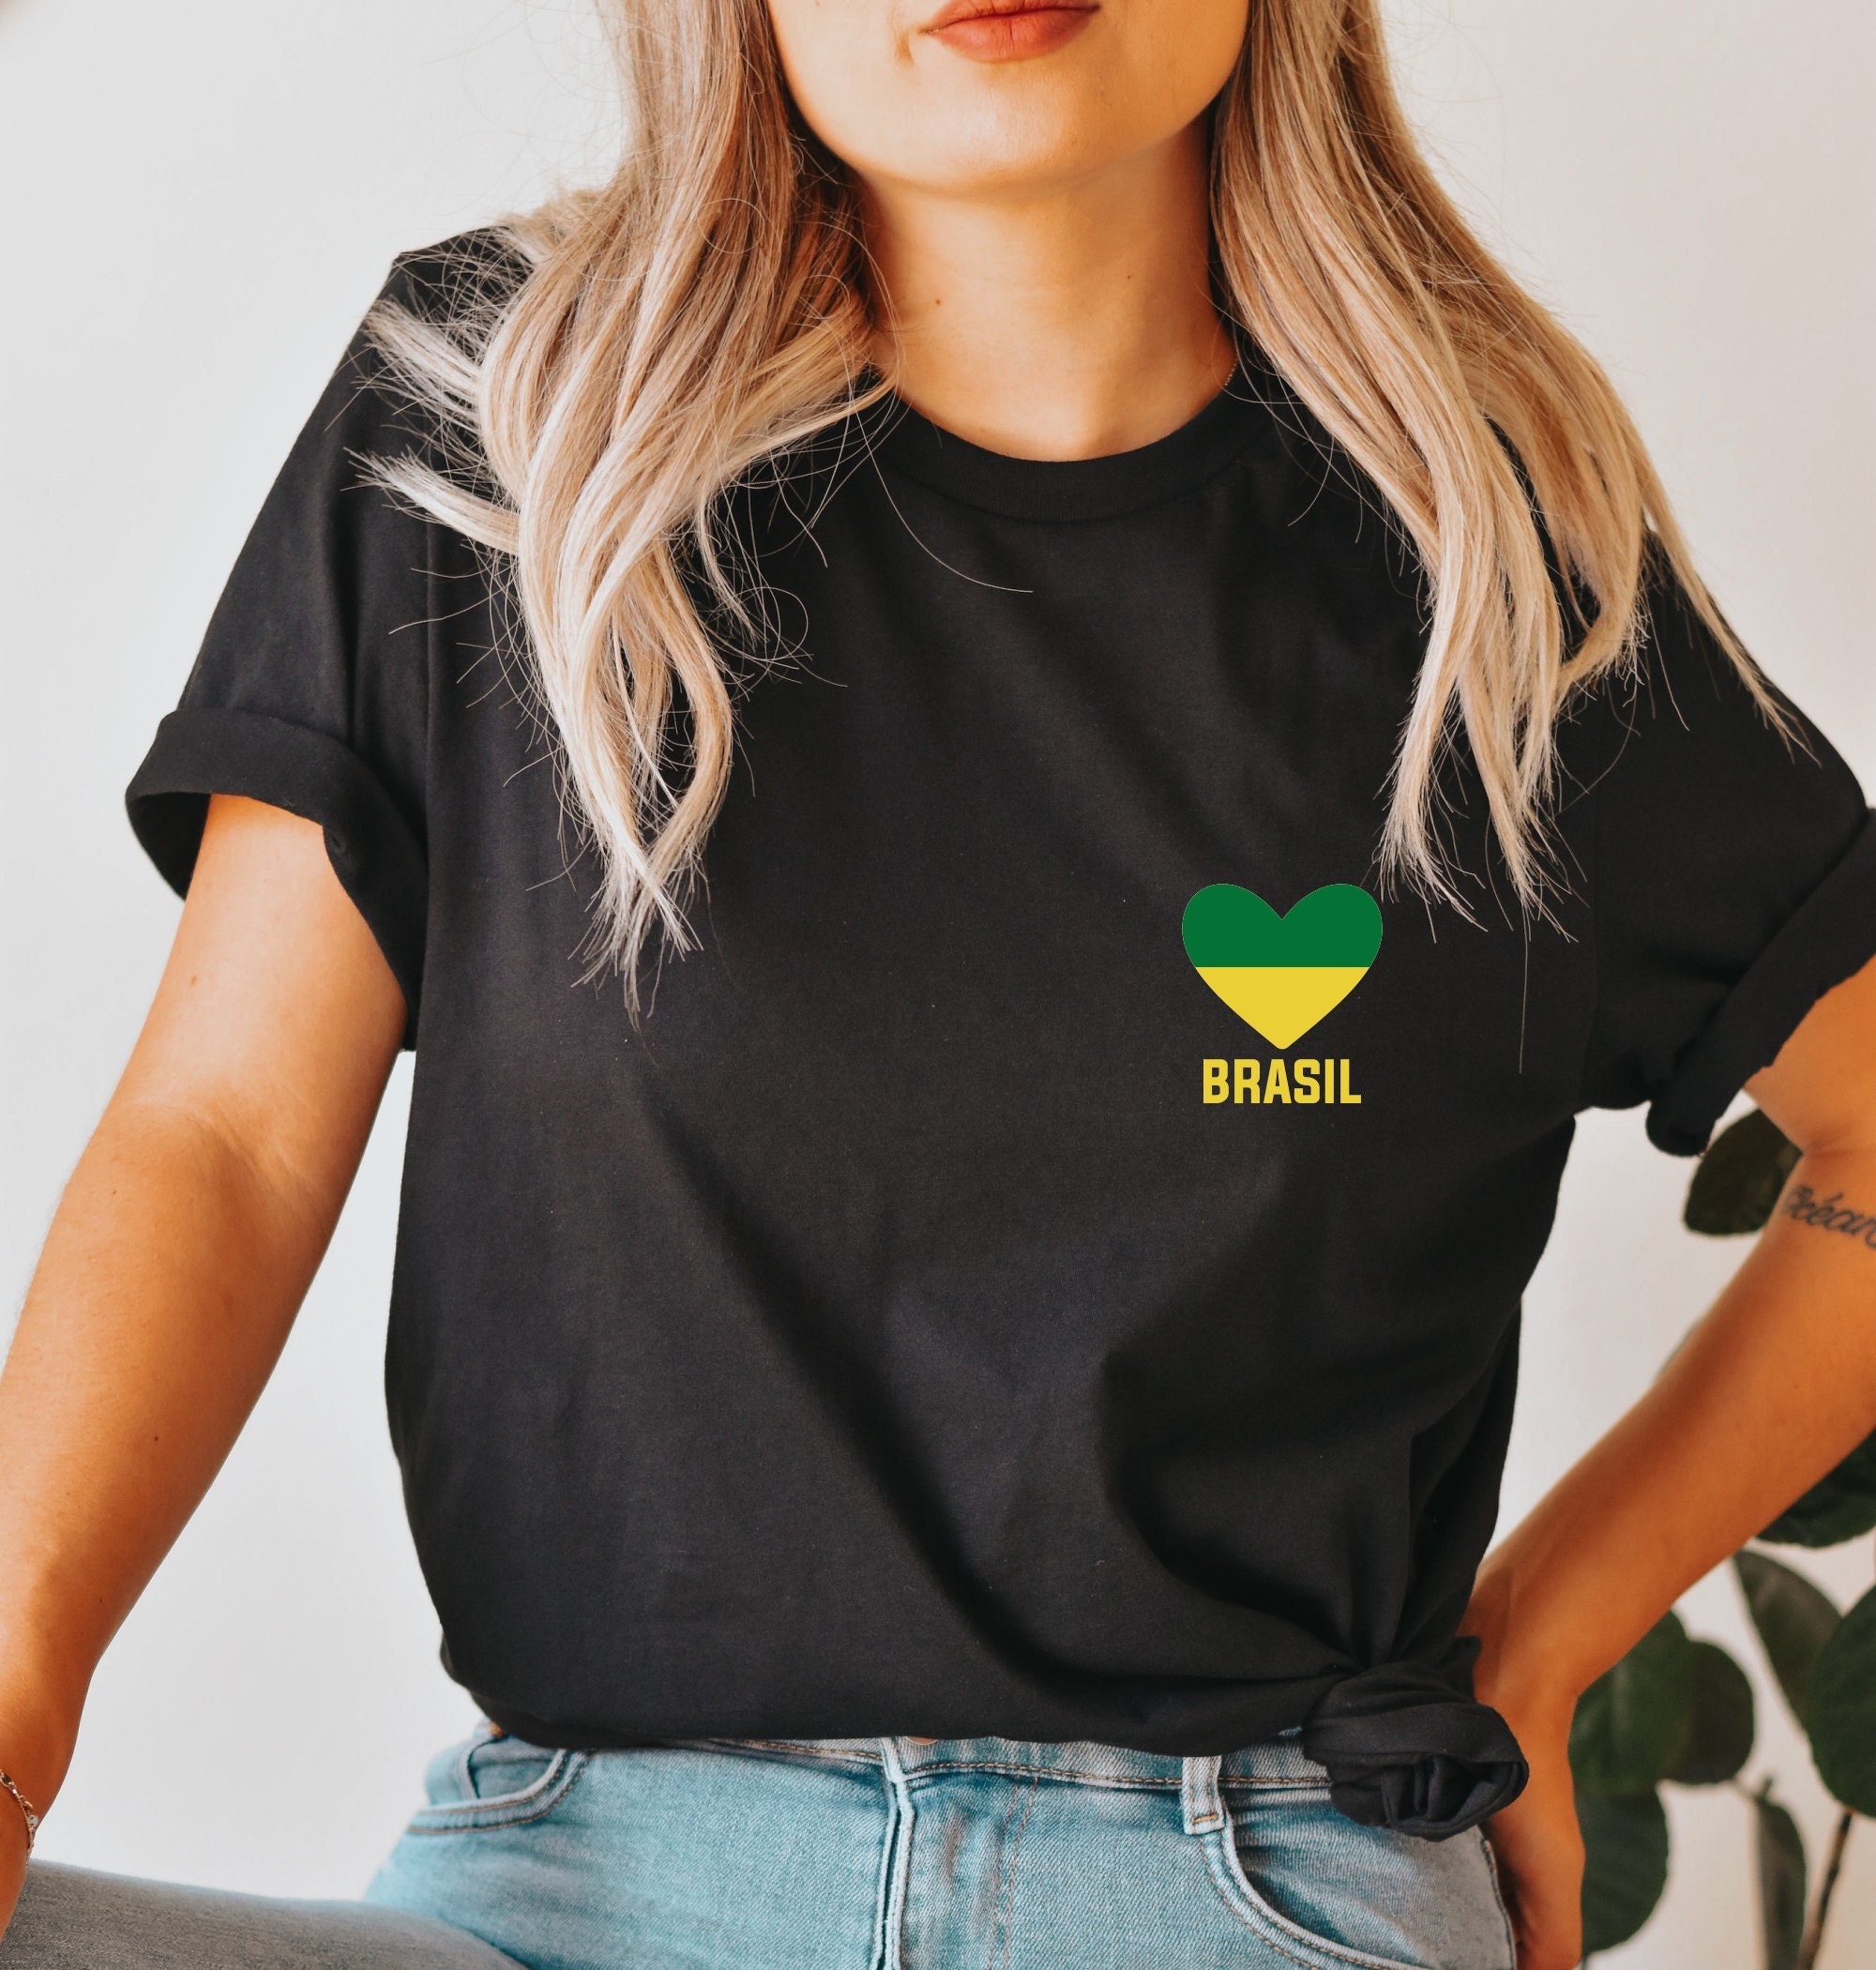 Brazil T Shirt, Brazil Tshirt, Ringer Gold Green Brazil Supporters